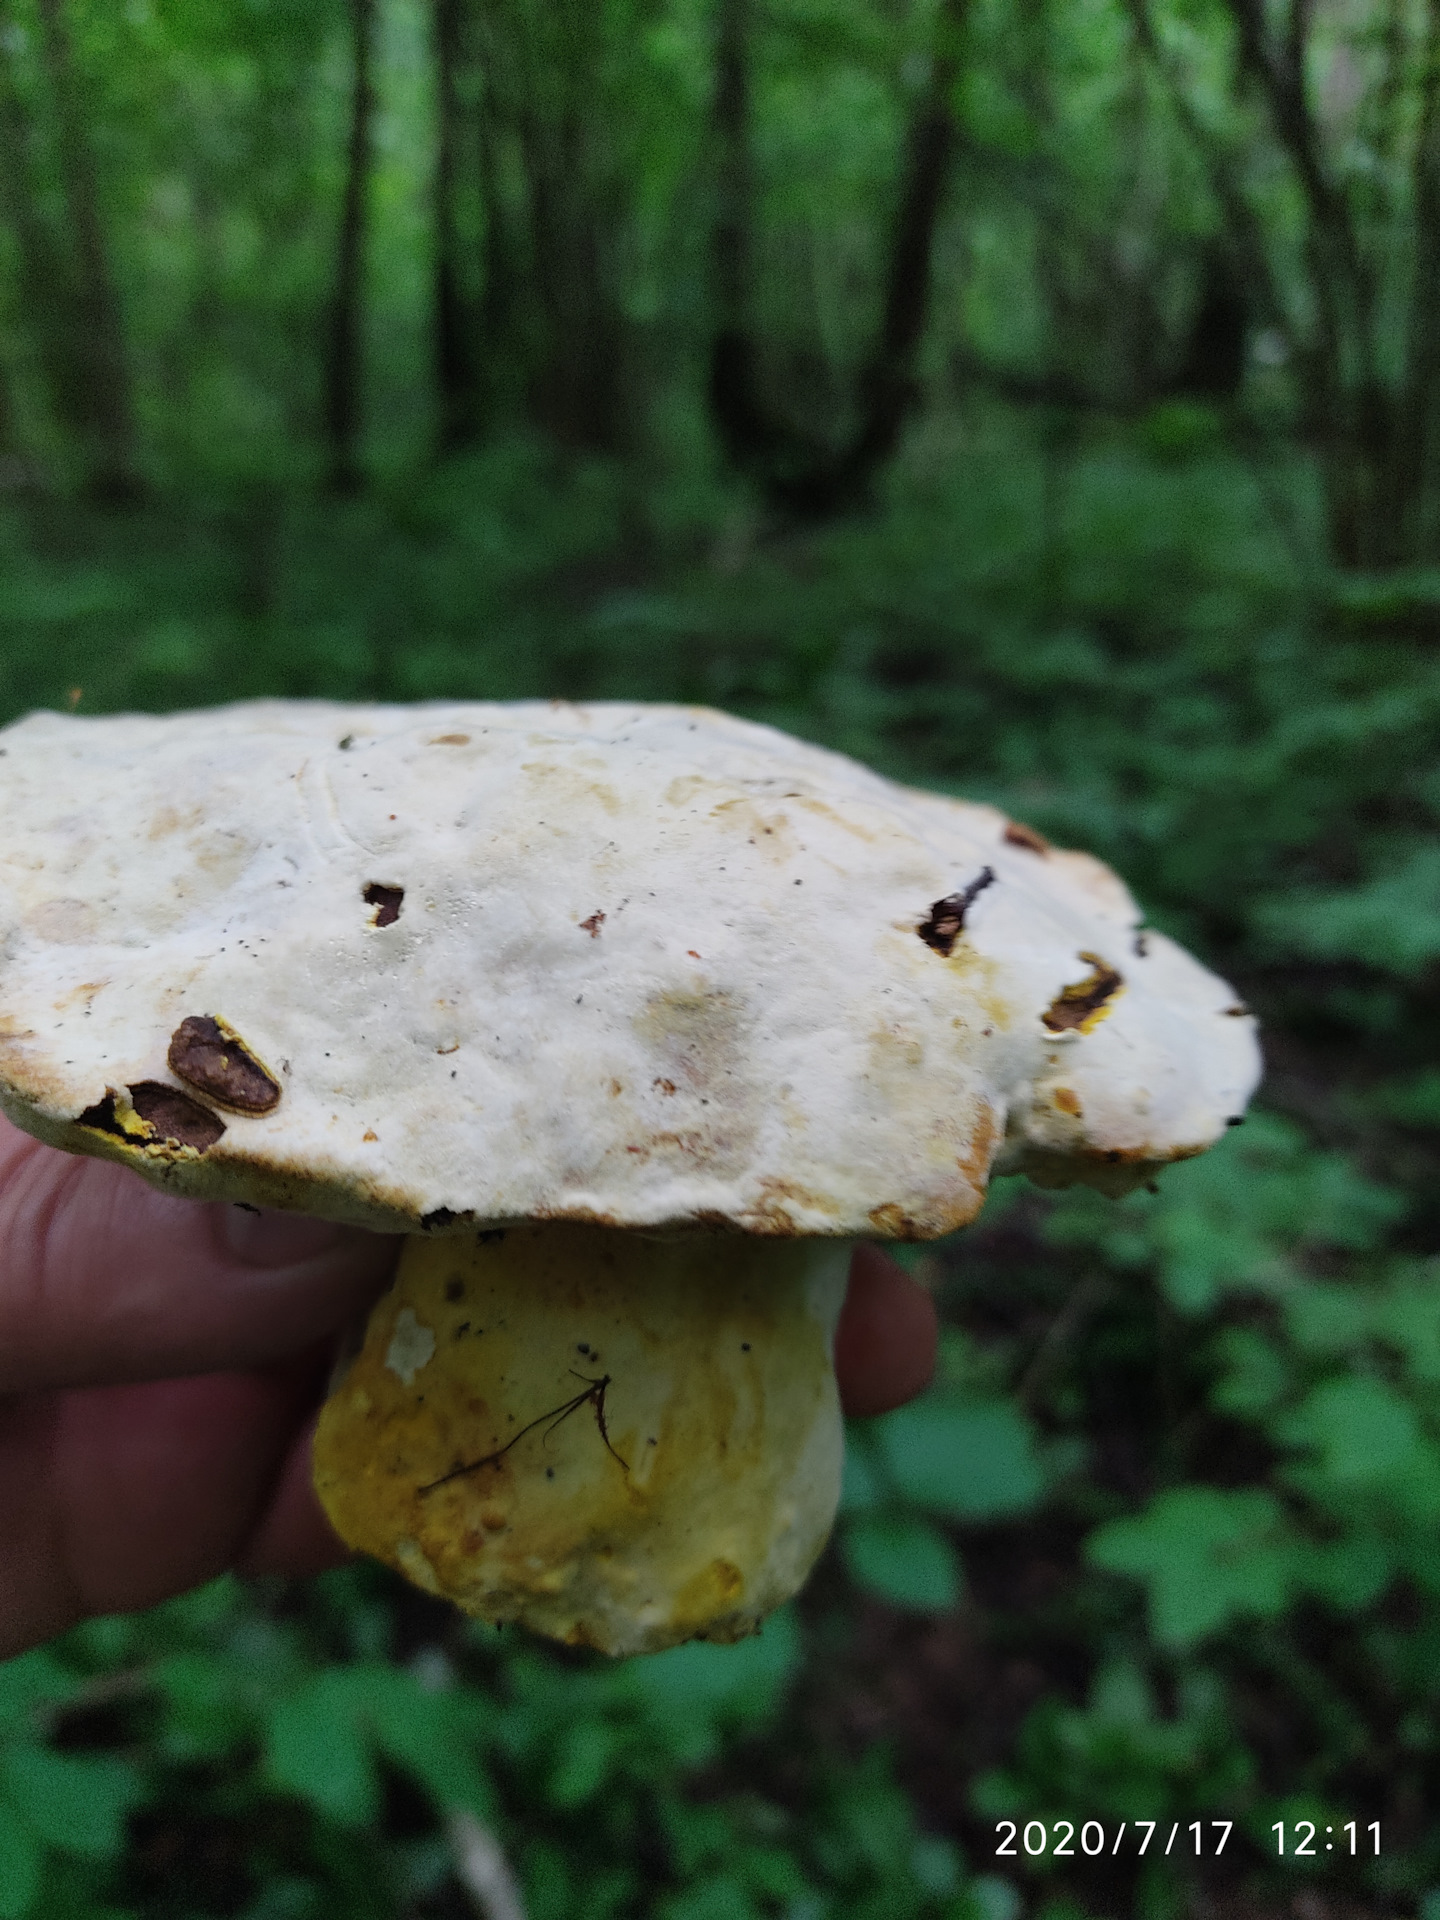 Большой гриб белого цвета с толстой ножкой